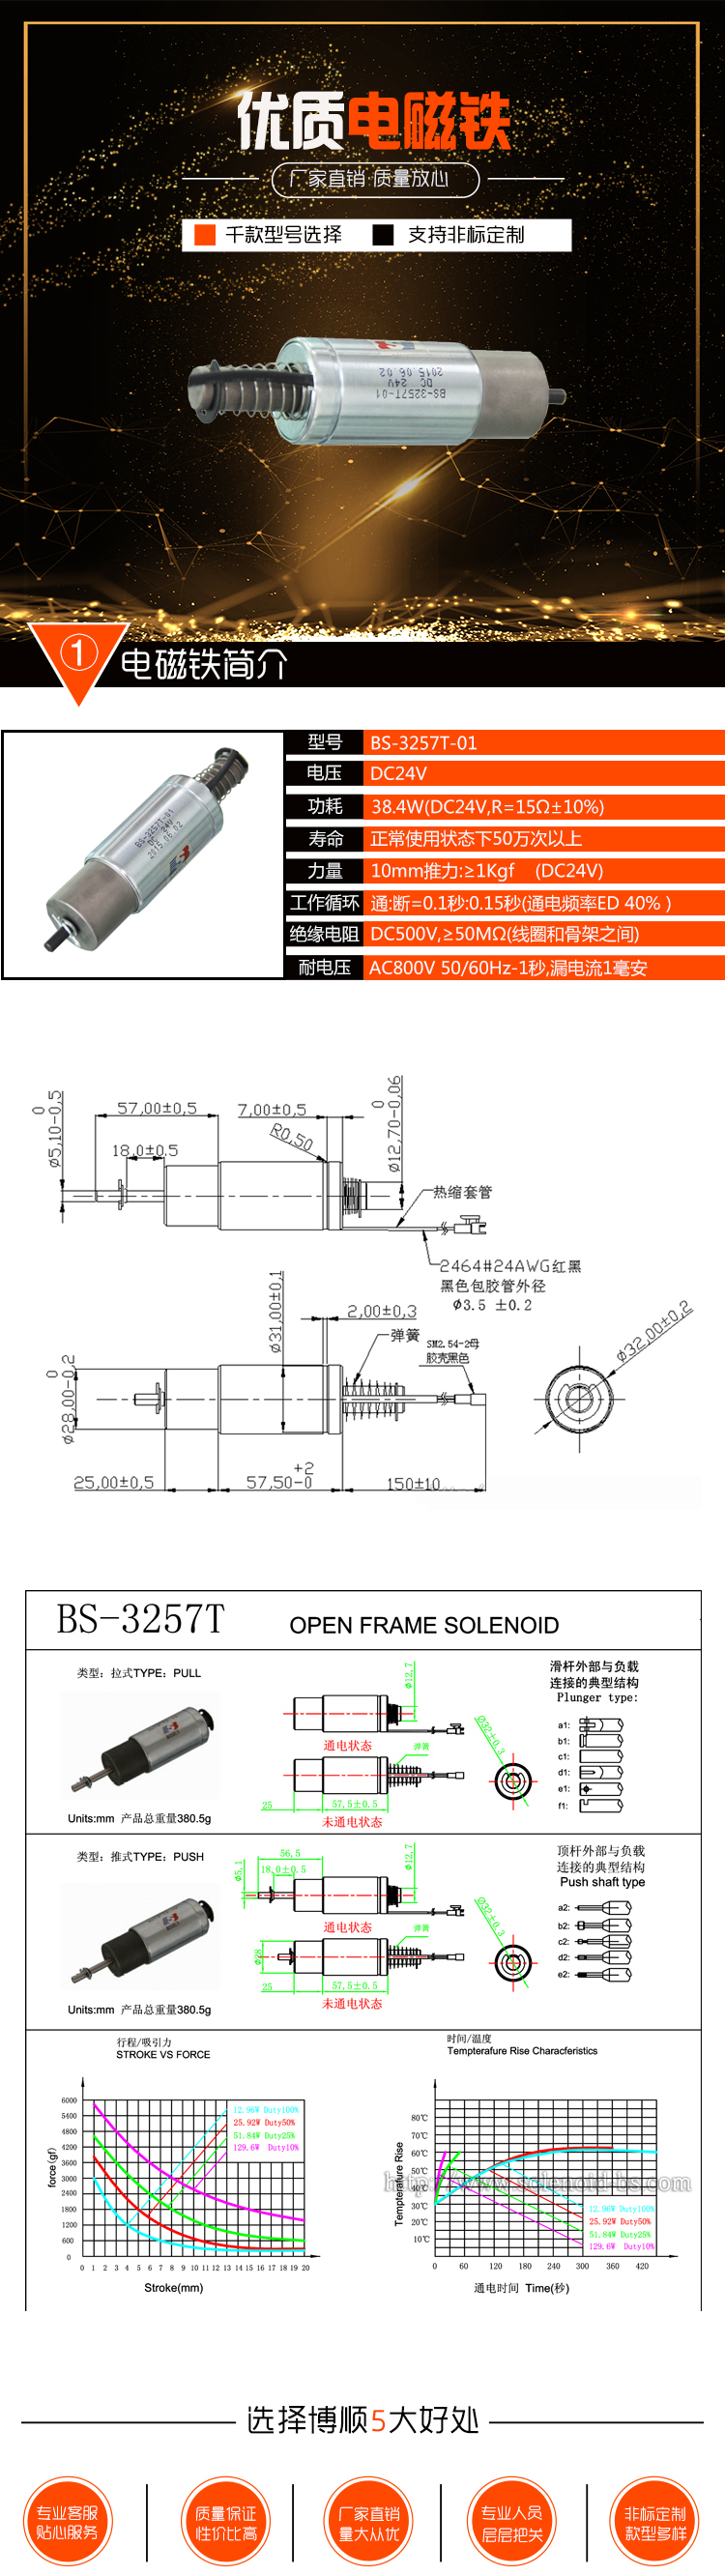 数码电磁铁BS-3257T-01